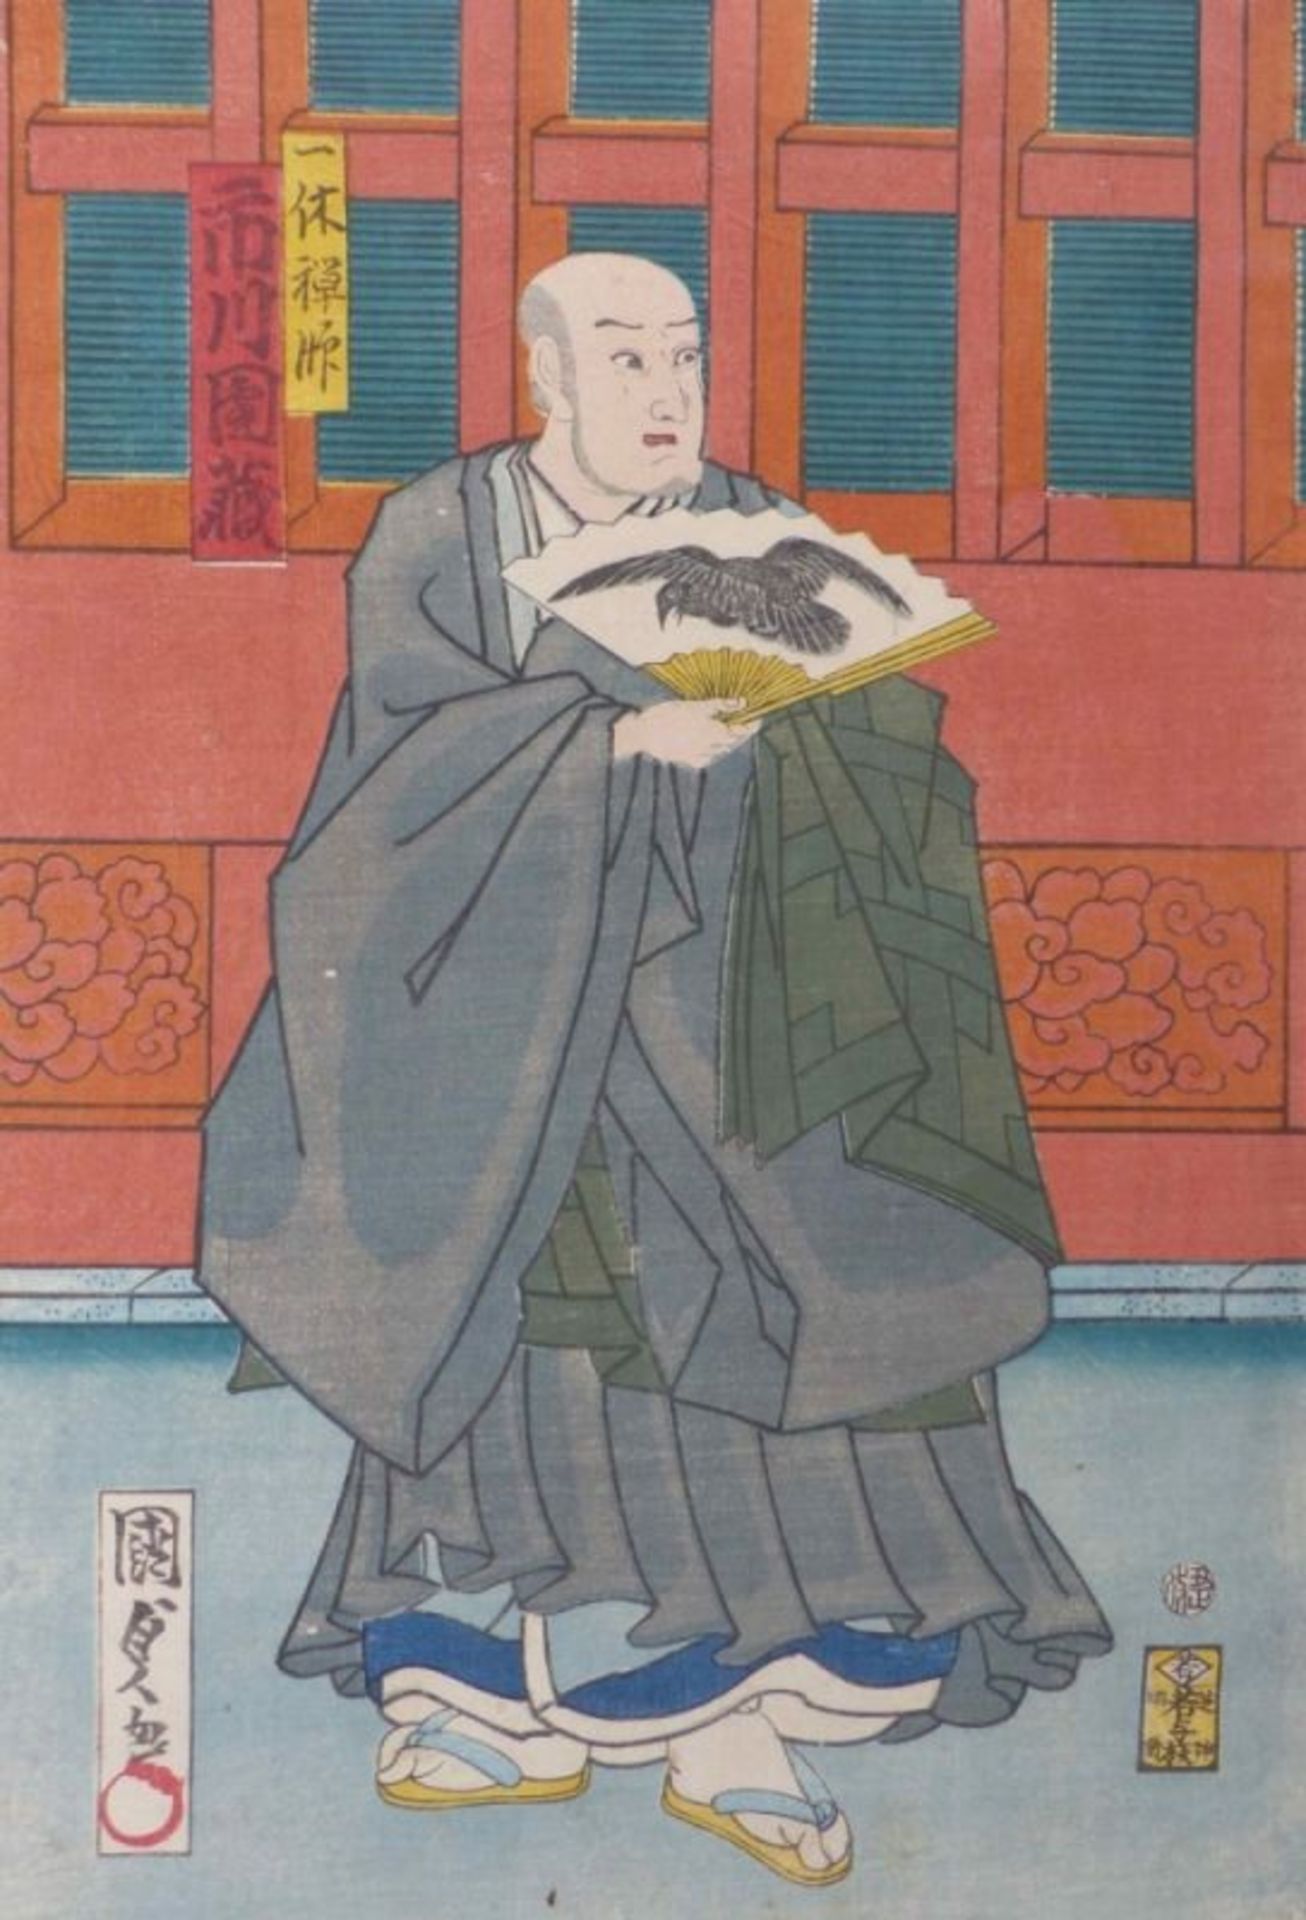 Utagawa Kunisada II (Toyokuni IV)